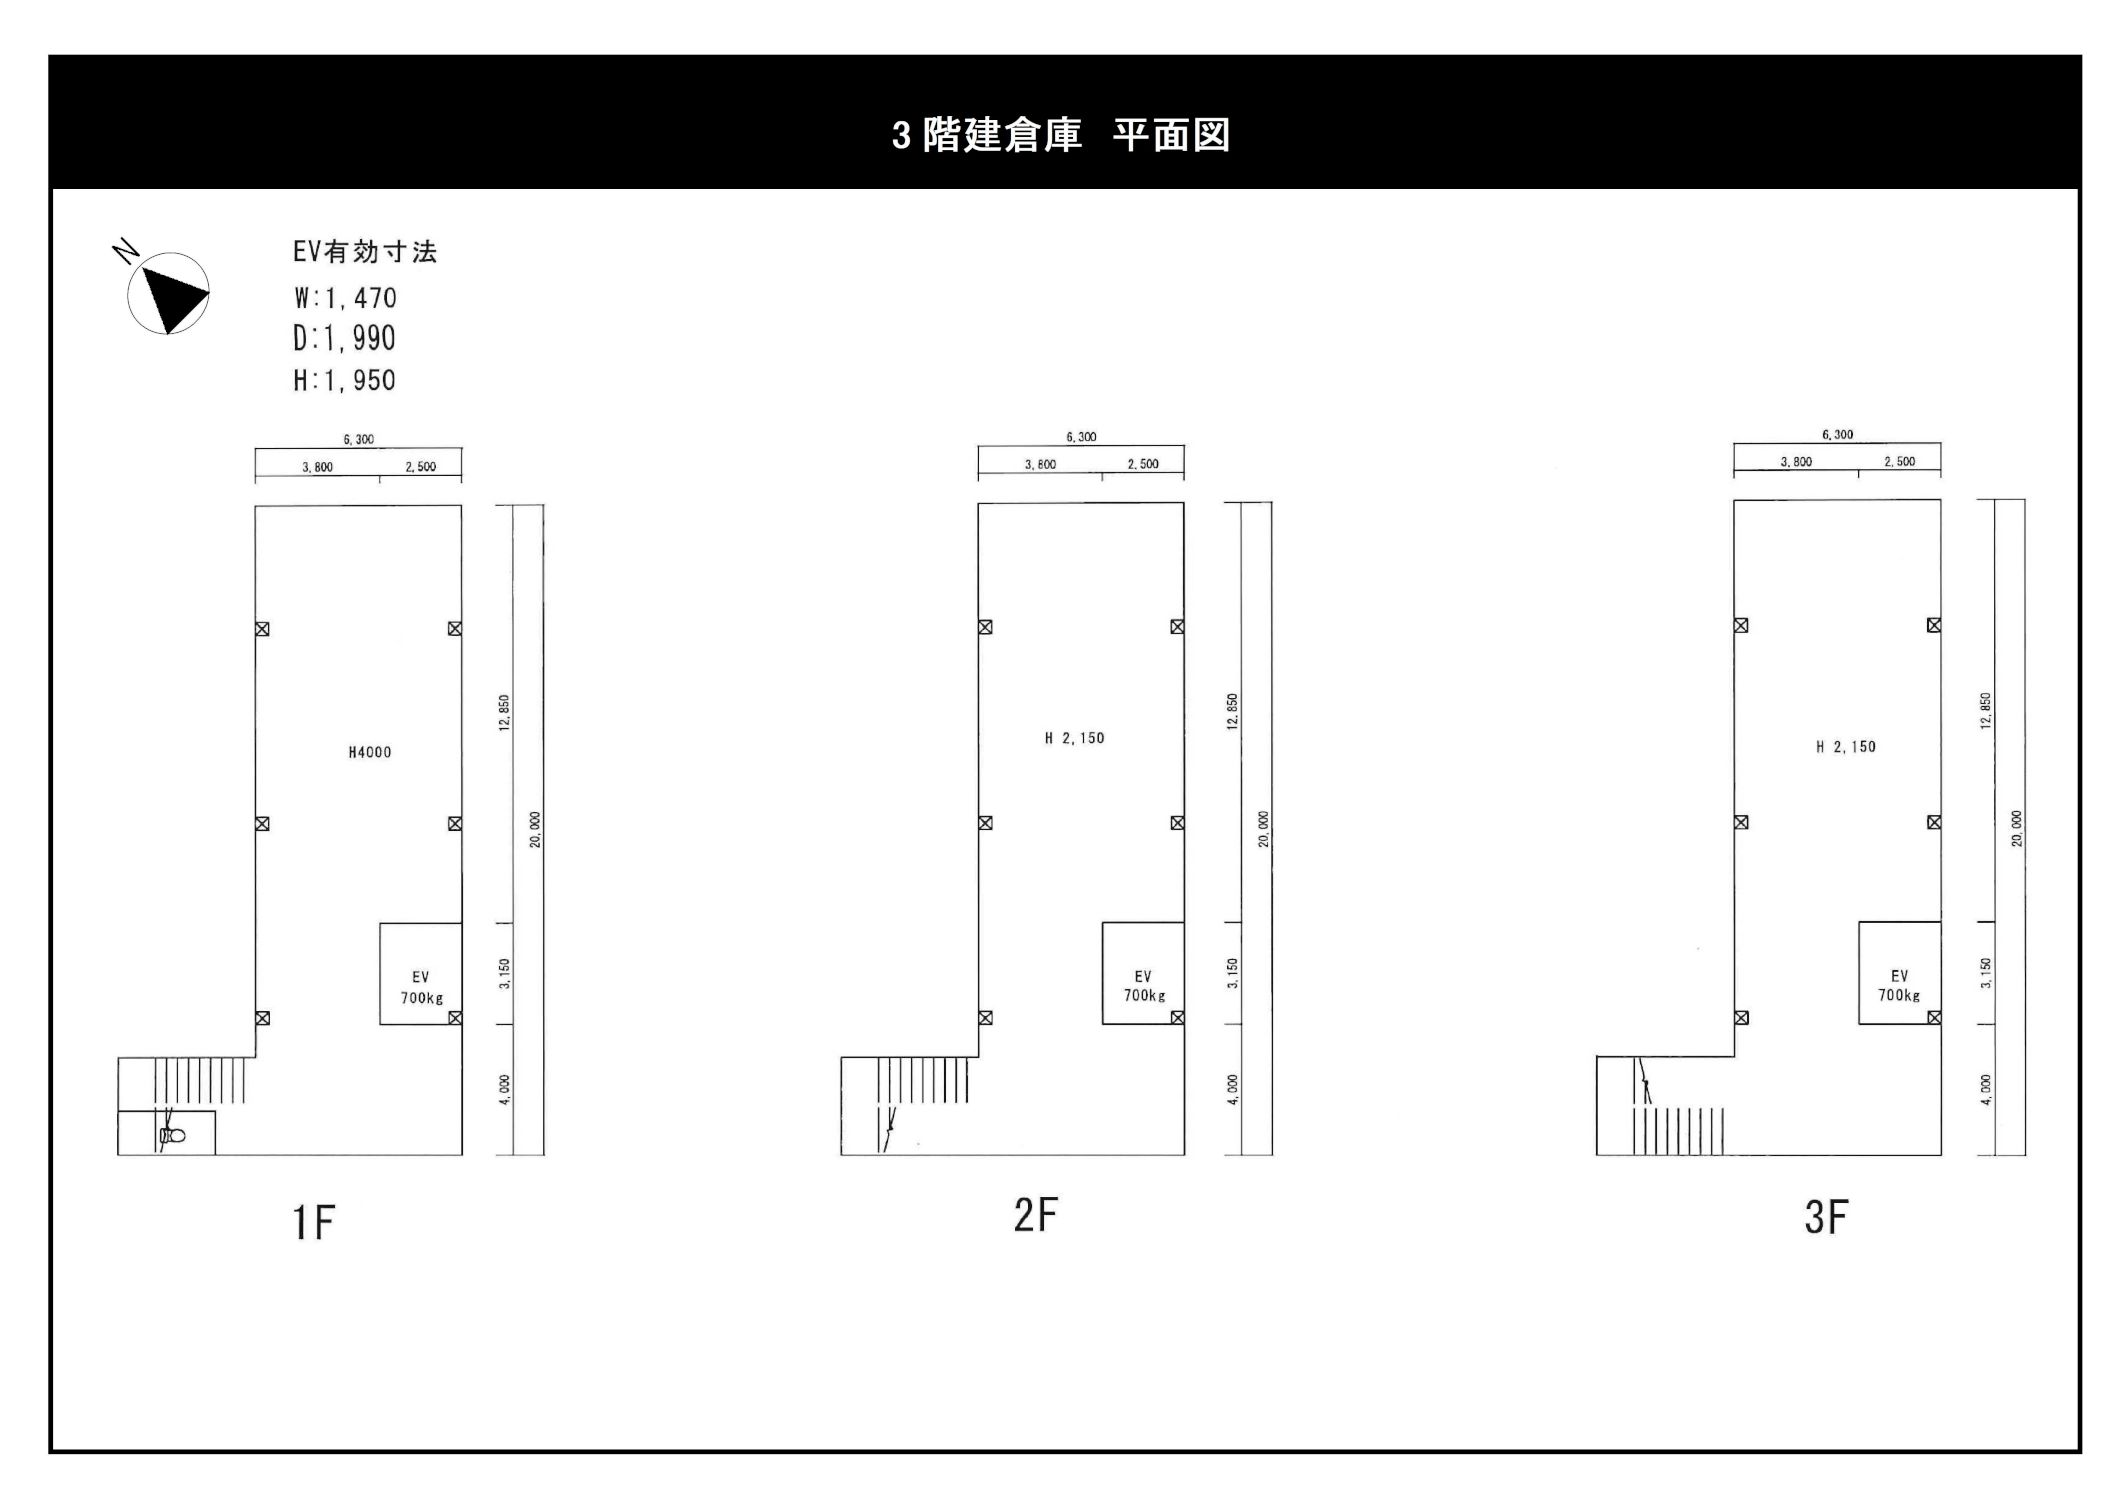 3階建倉庫平面図ネット用_s.jpg